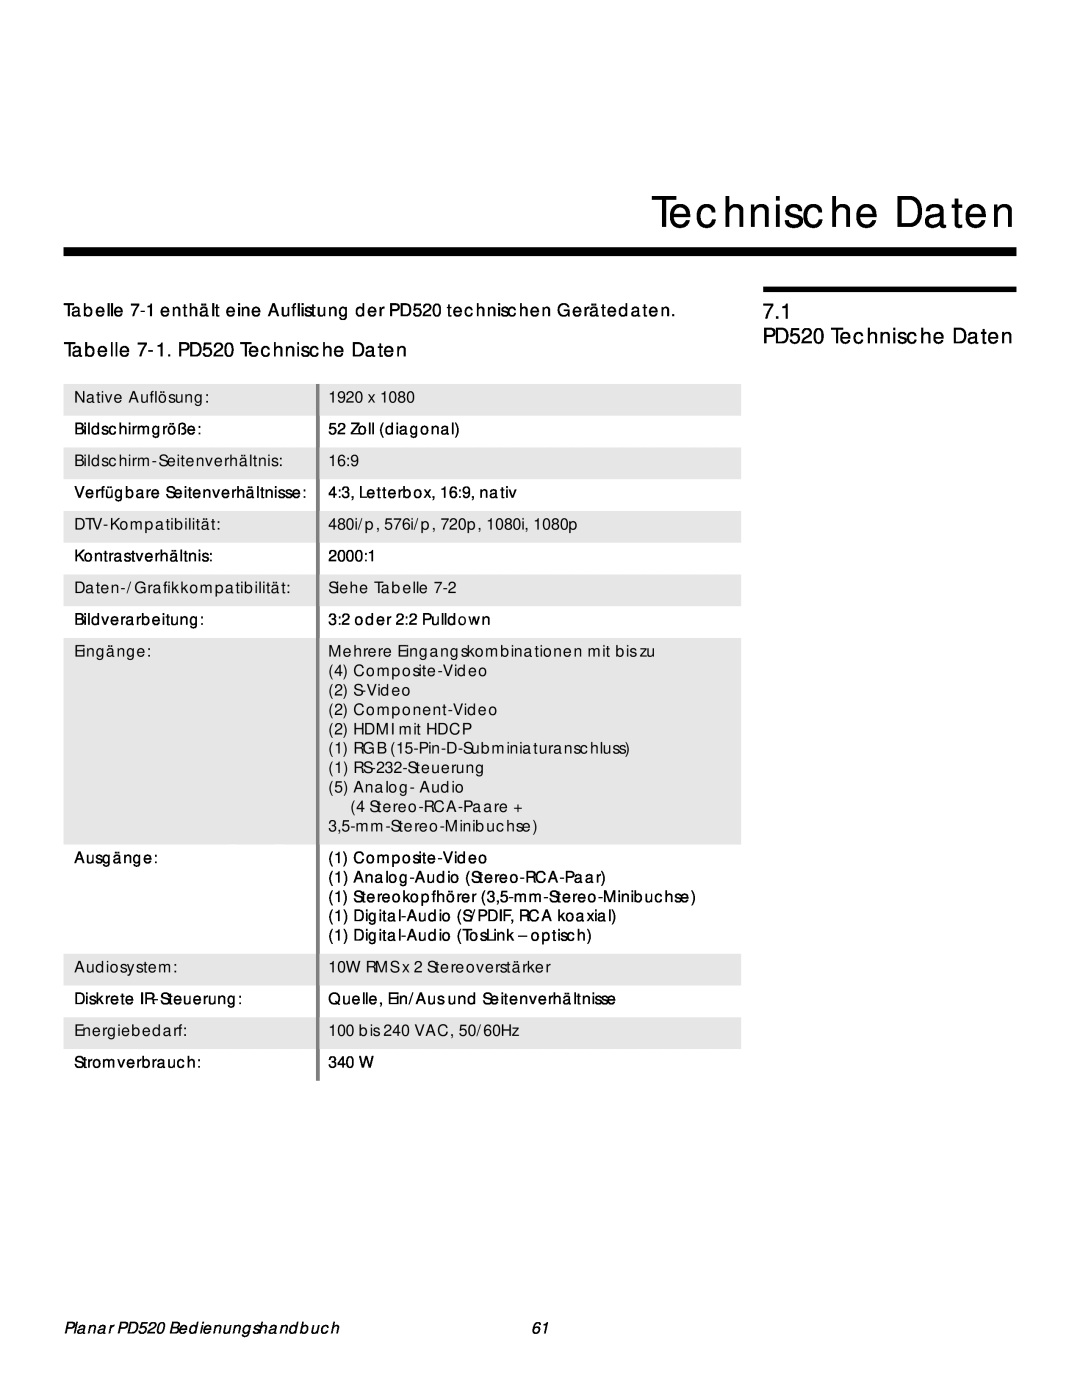 Planar 7.1 PD520 Technische Daten, Tabelle 7-1.PD520 Technische Daten, Native Auflösung, Bildschirmgröße, Eingänge 